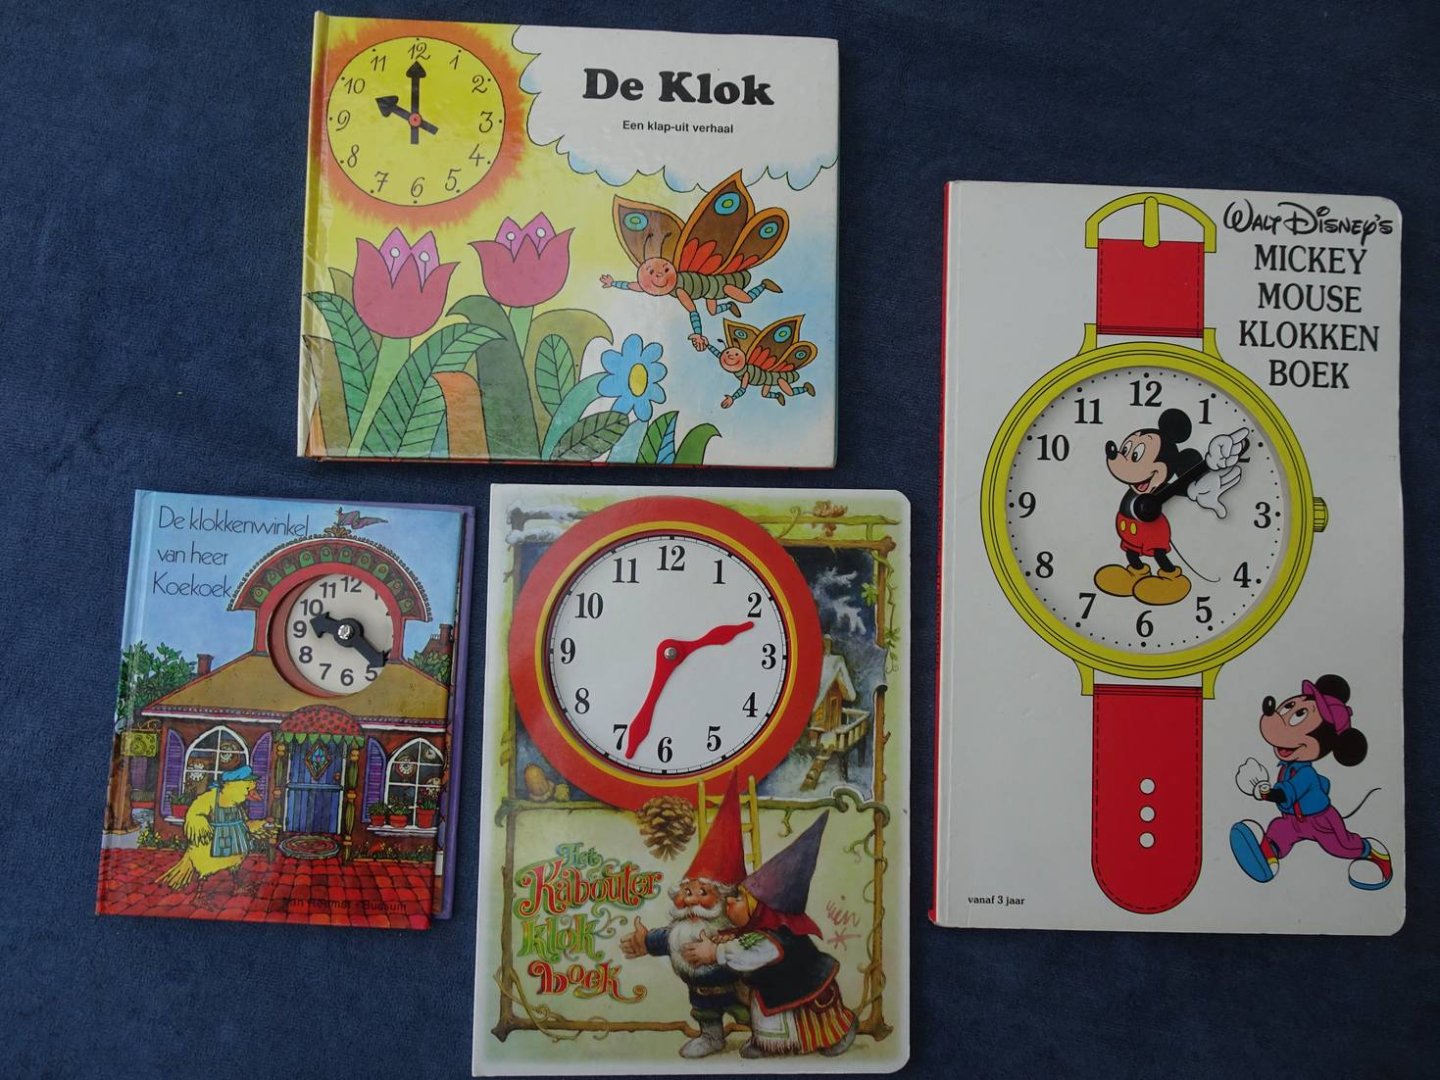 Disney, Walt, Rien Poortvliet, Arnold Shapiro, et al. - Walt Disney's Mickey Mouse Klokkenboek/ Het Kabouter Klokboek/ De Klokkenwinkel van heer Koekoek/ De Klok; een klap-uit verhaal. 4 delen.